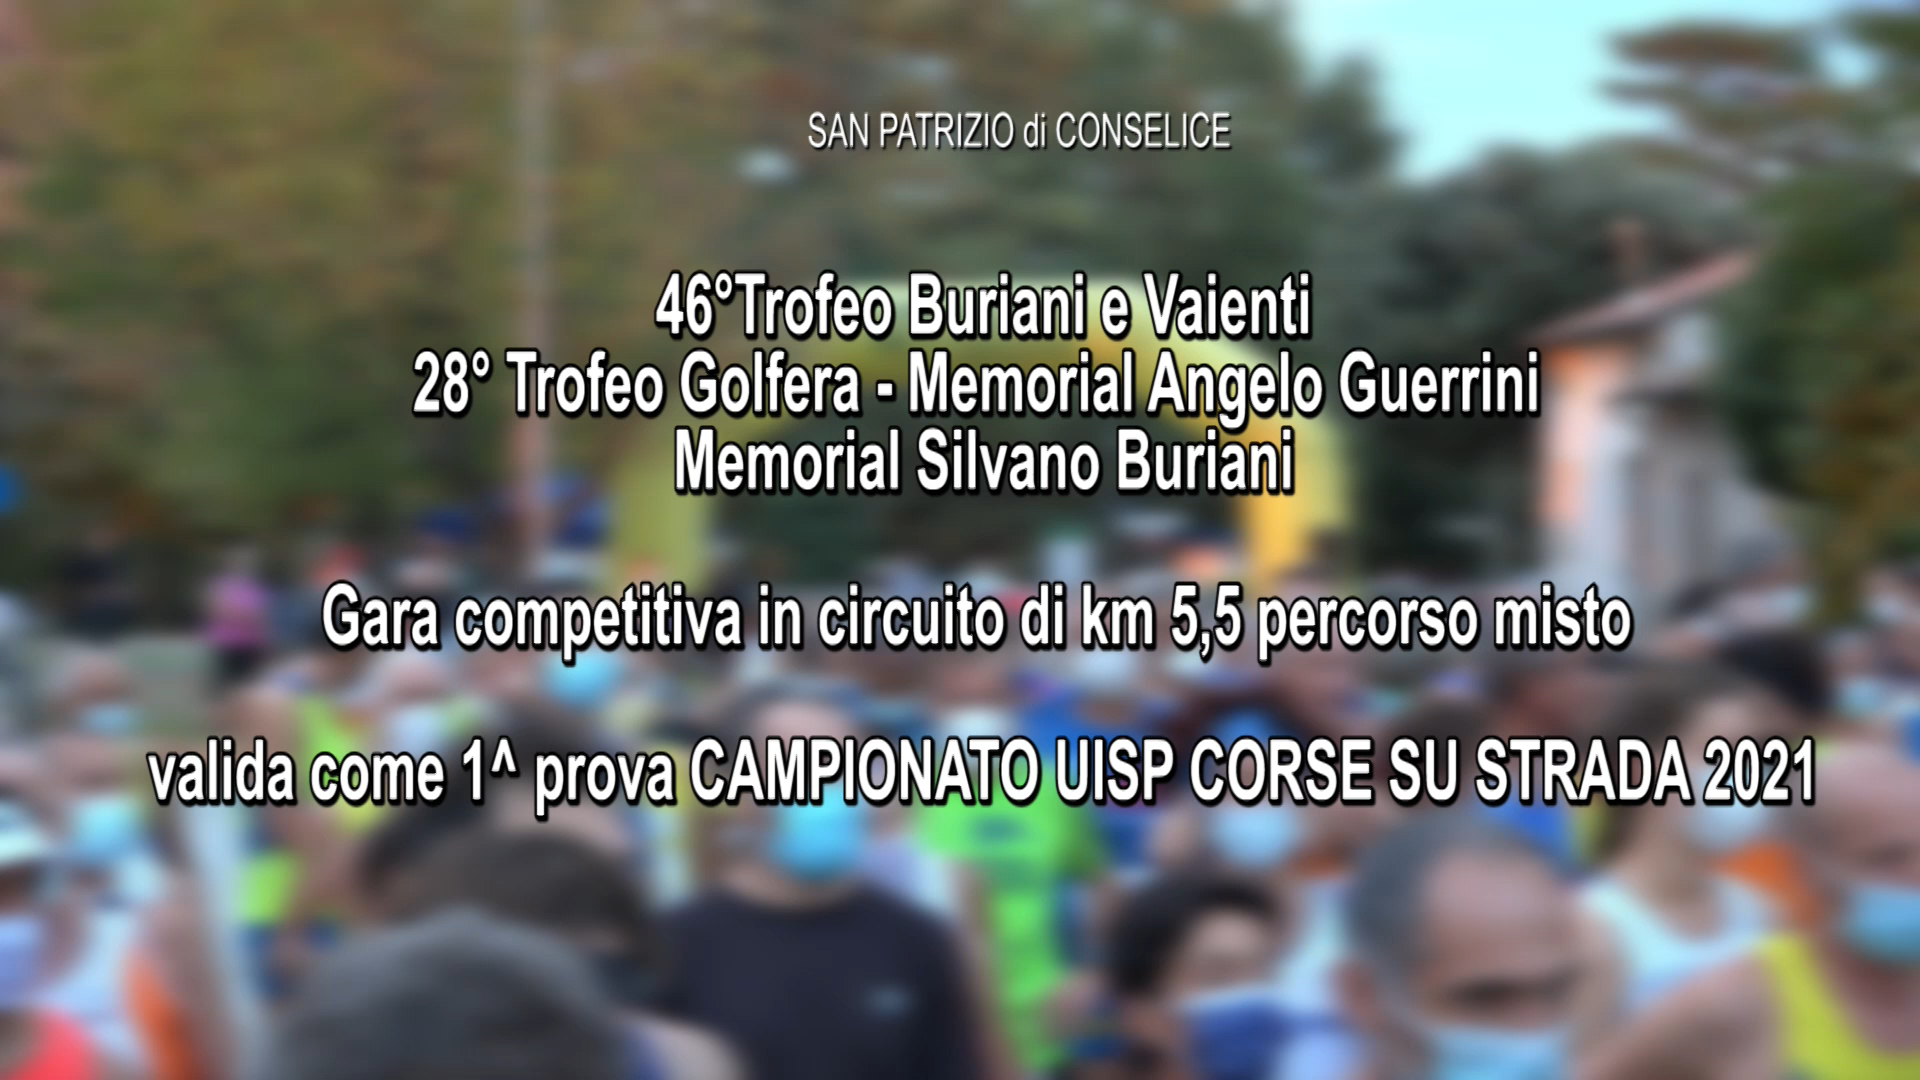 Campionato UISP corse su strada 2021: 46° Trofeo Buriani e Vaienti – 28° Trofeo Golfera